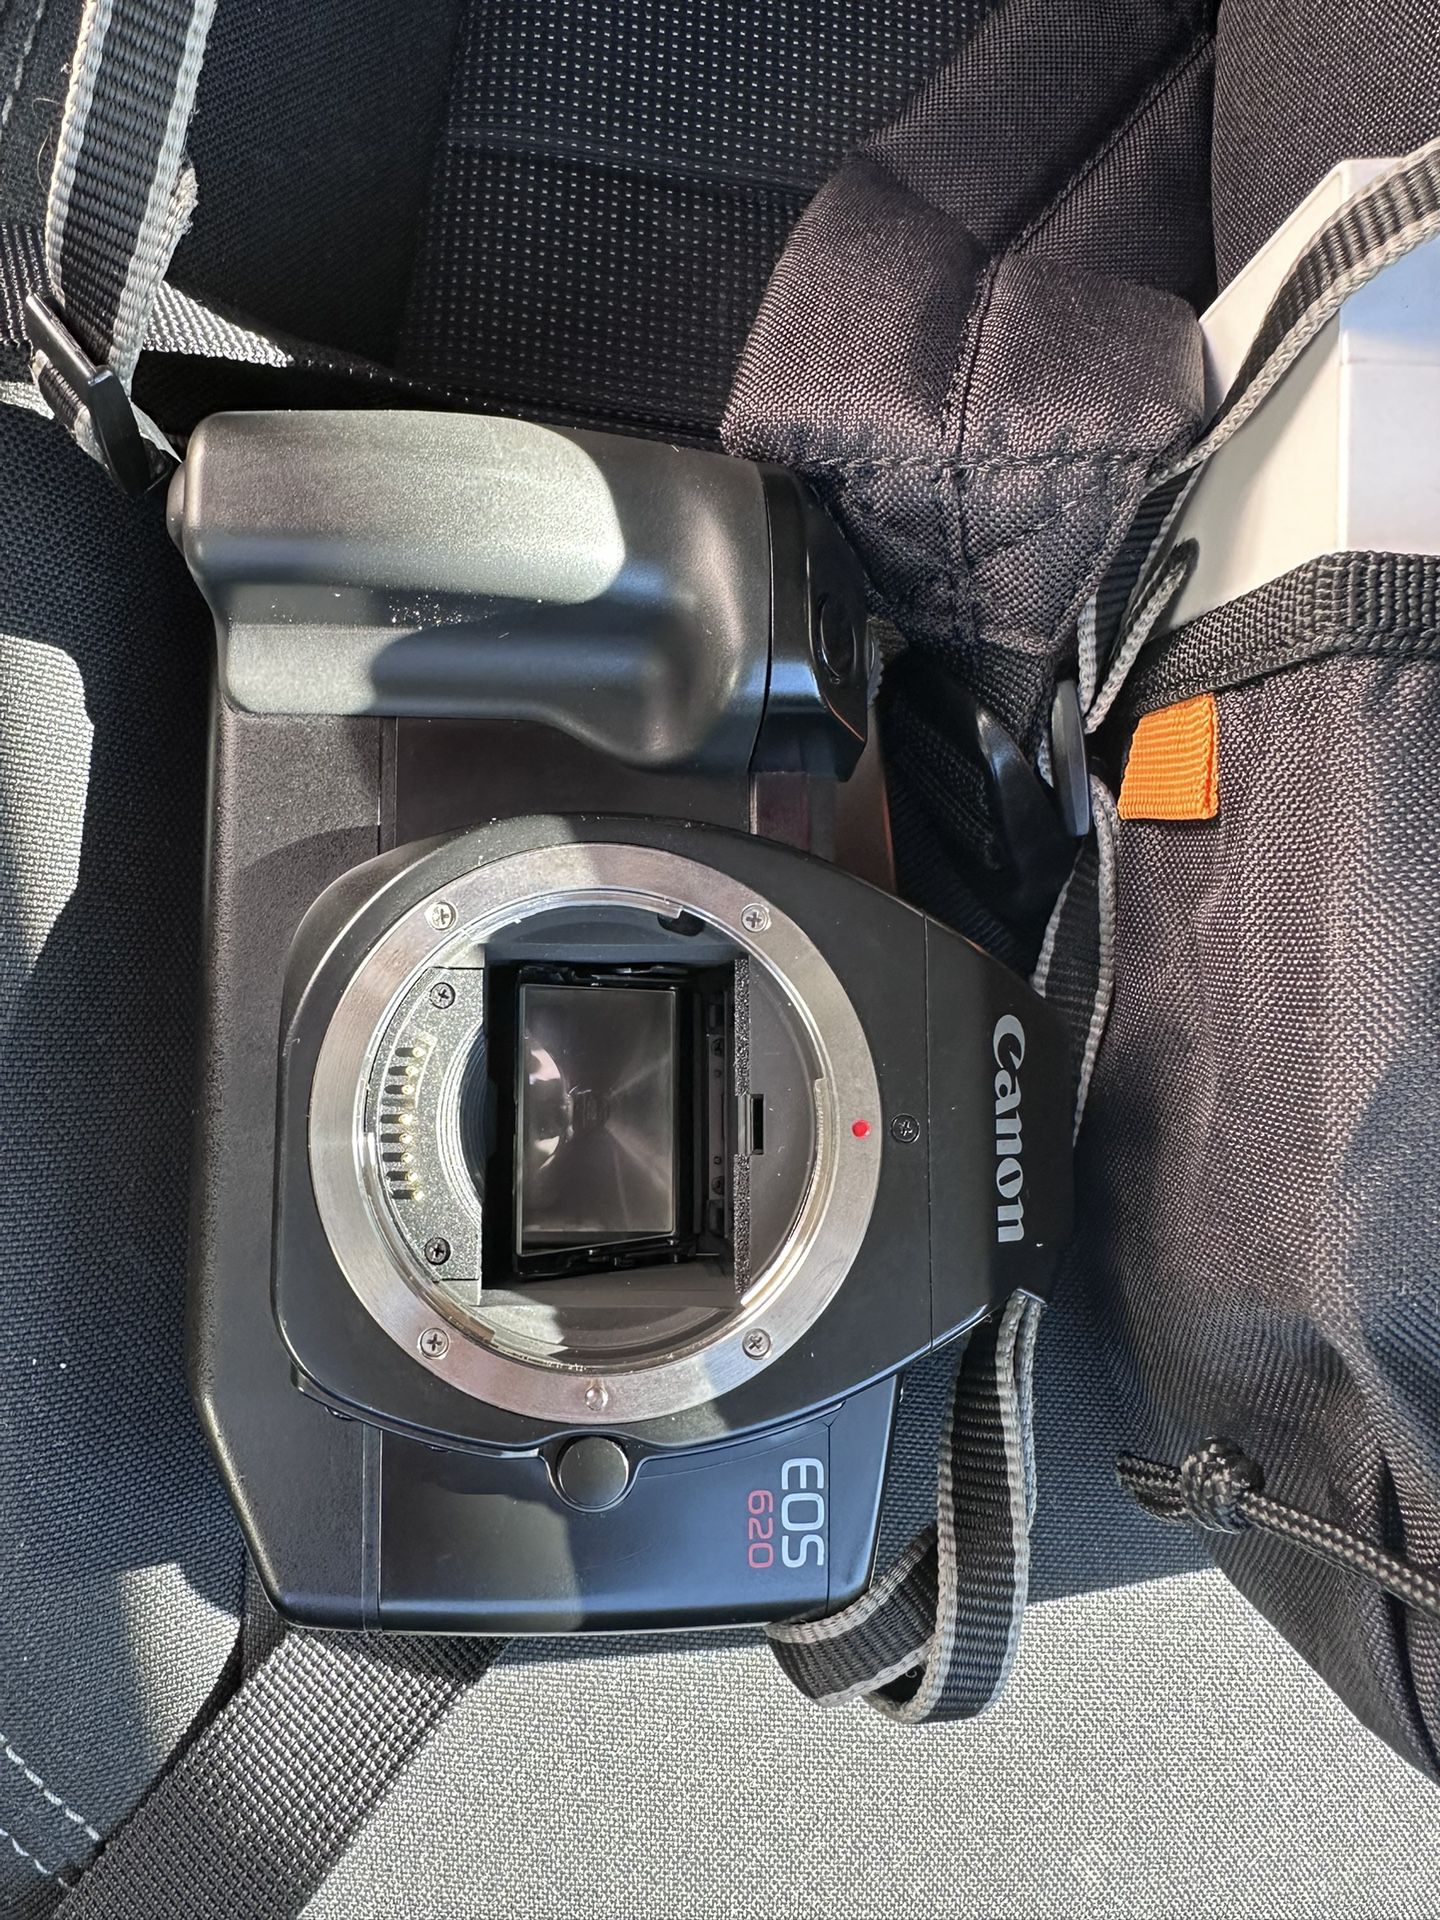 Canon EOS 620 Film Camera